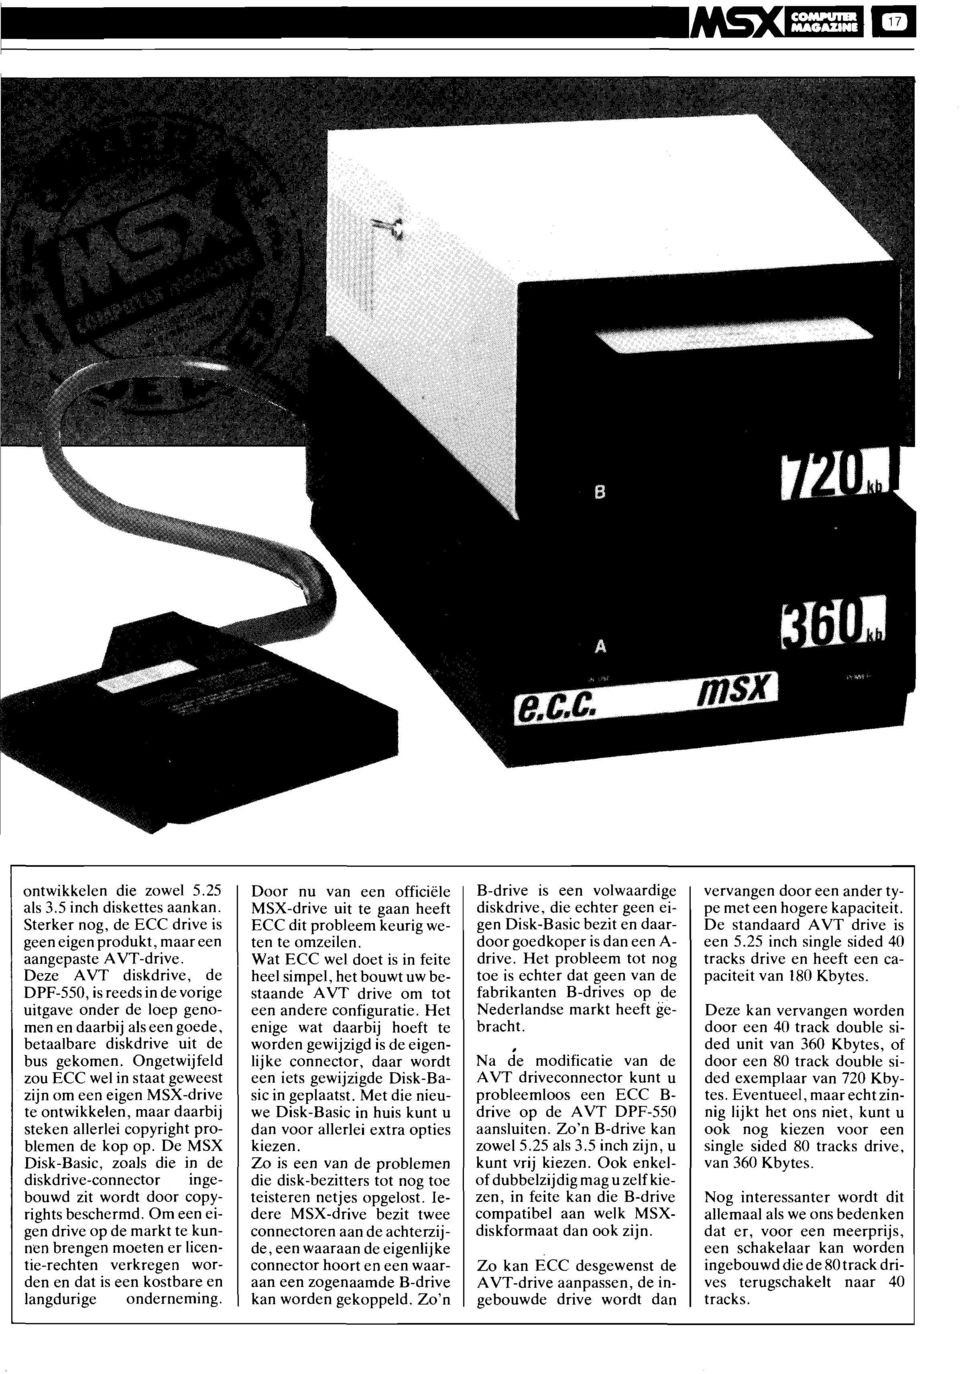 Ongetwijfeld zou ECC wel in staat geweest zijn om een eigen MSX-drive te ontwikkelen, maar daarbij steken allerlei copyright problemen de kop op.